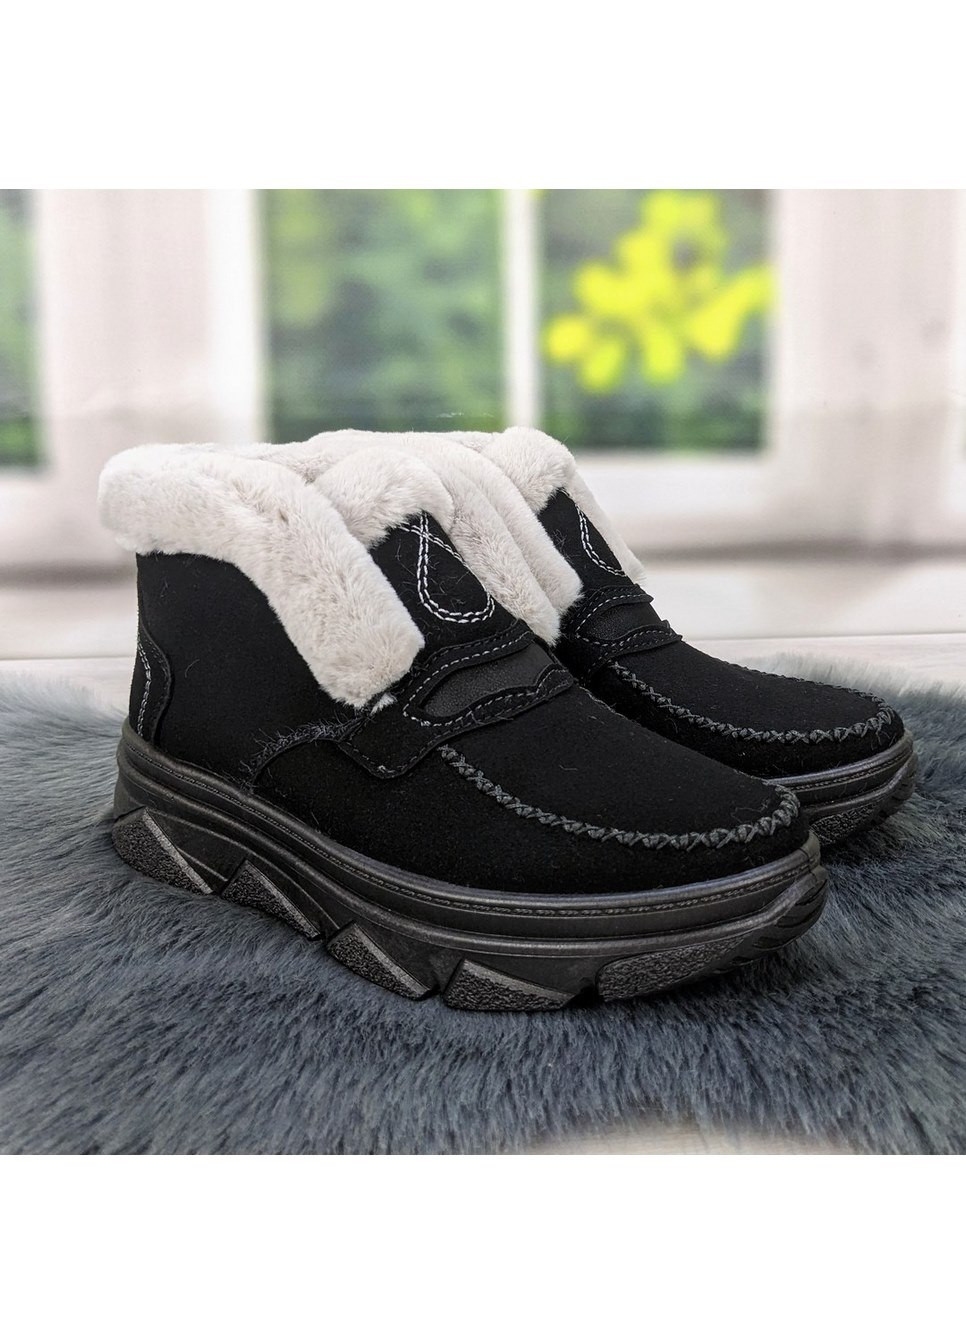 Зимние ботинки женские зимние черные замшевые Dago из искусственной замши